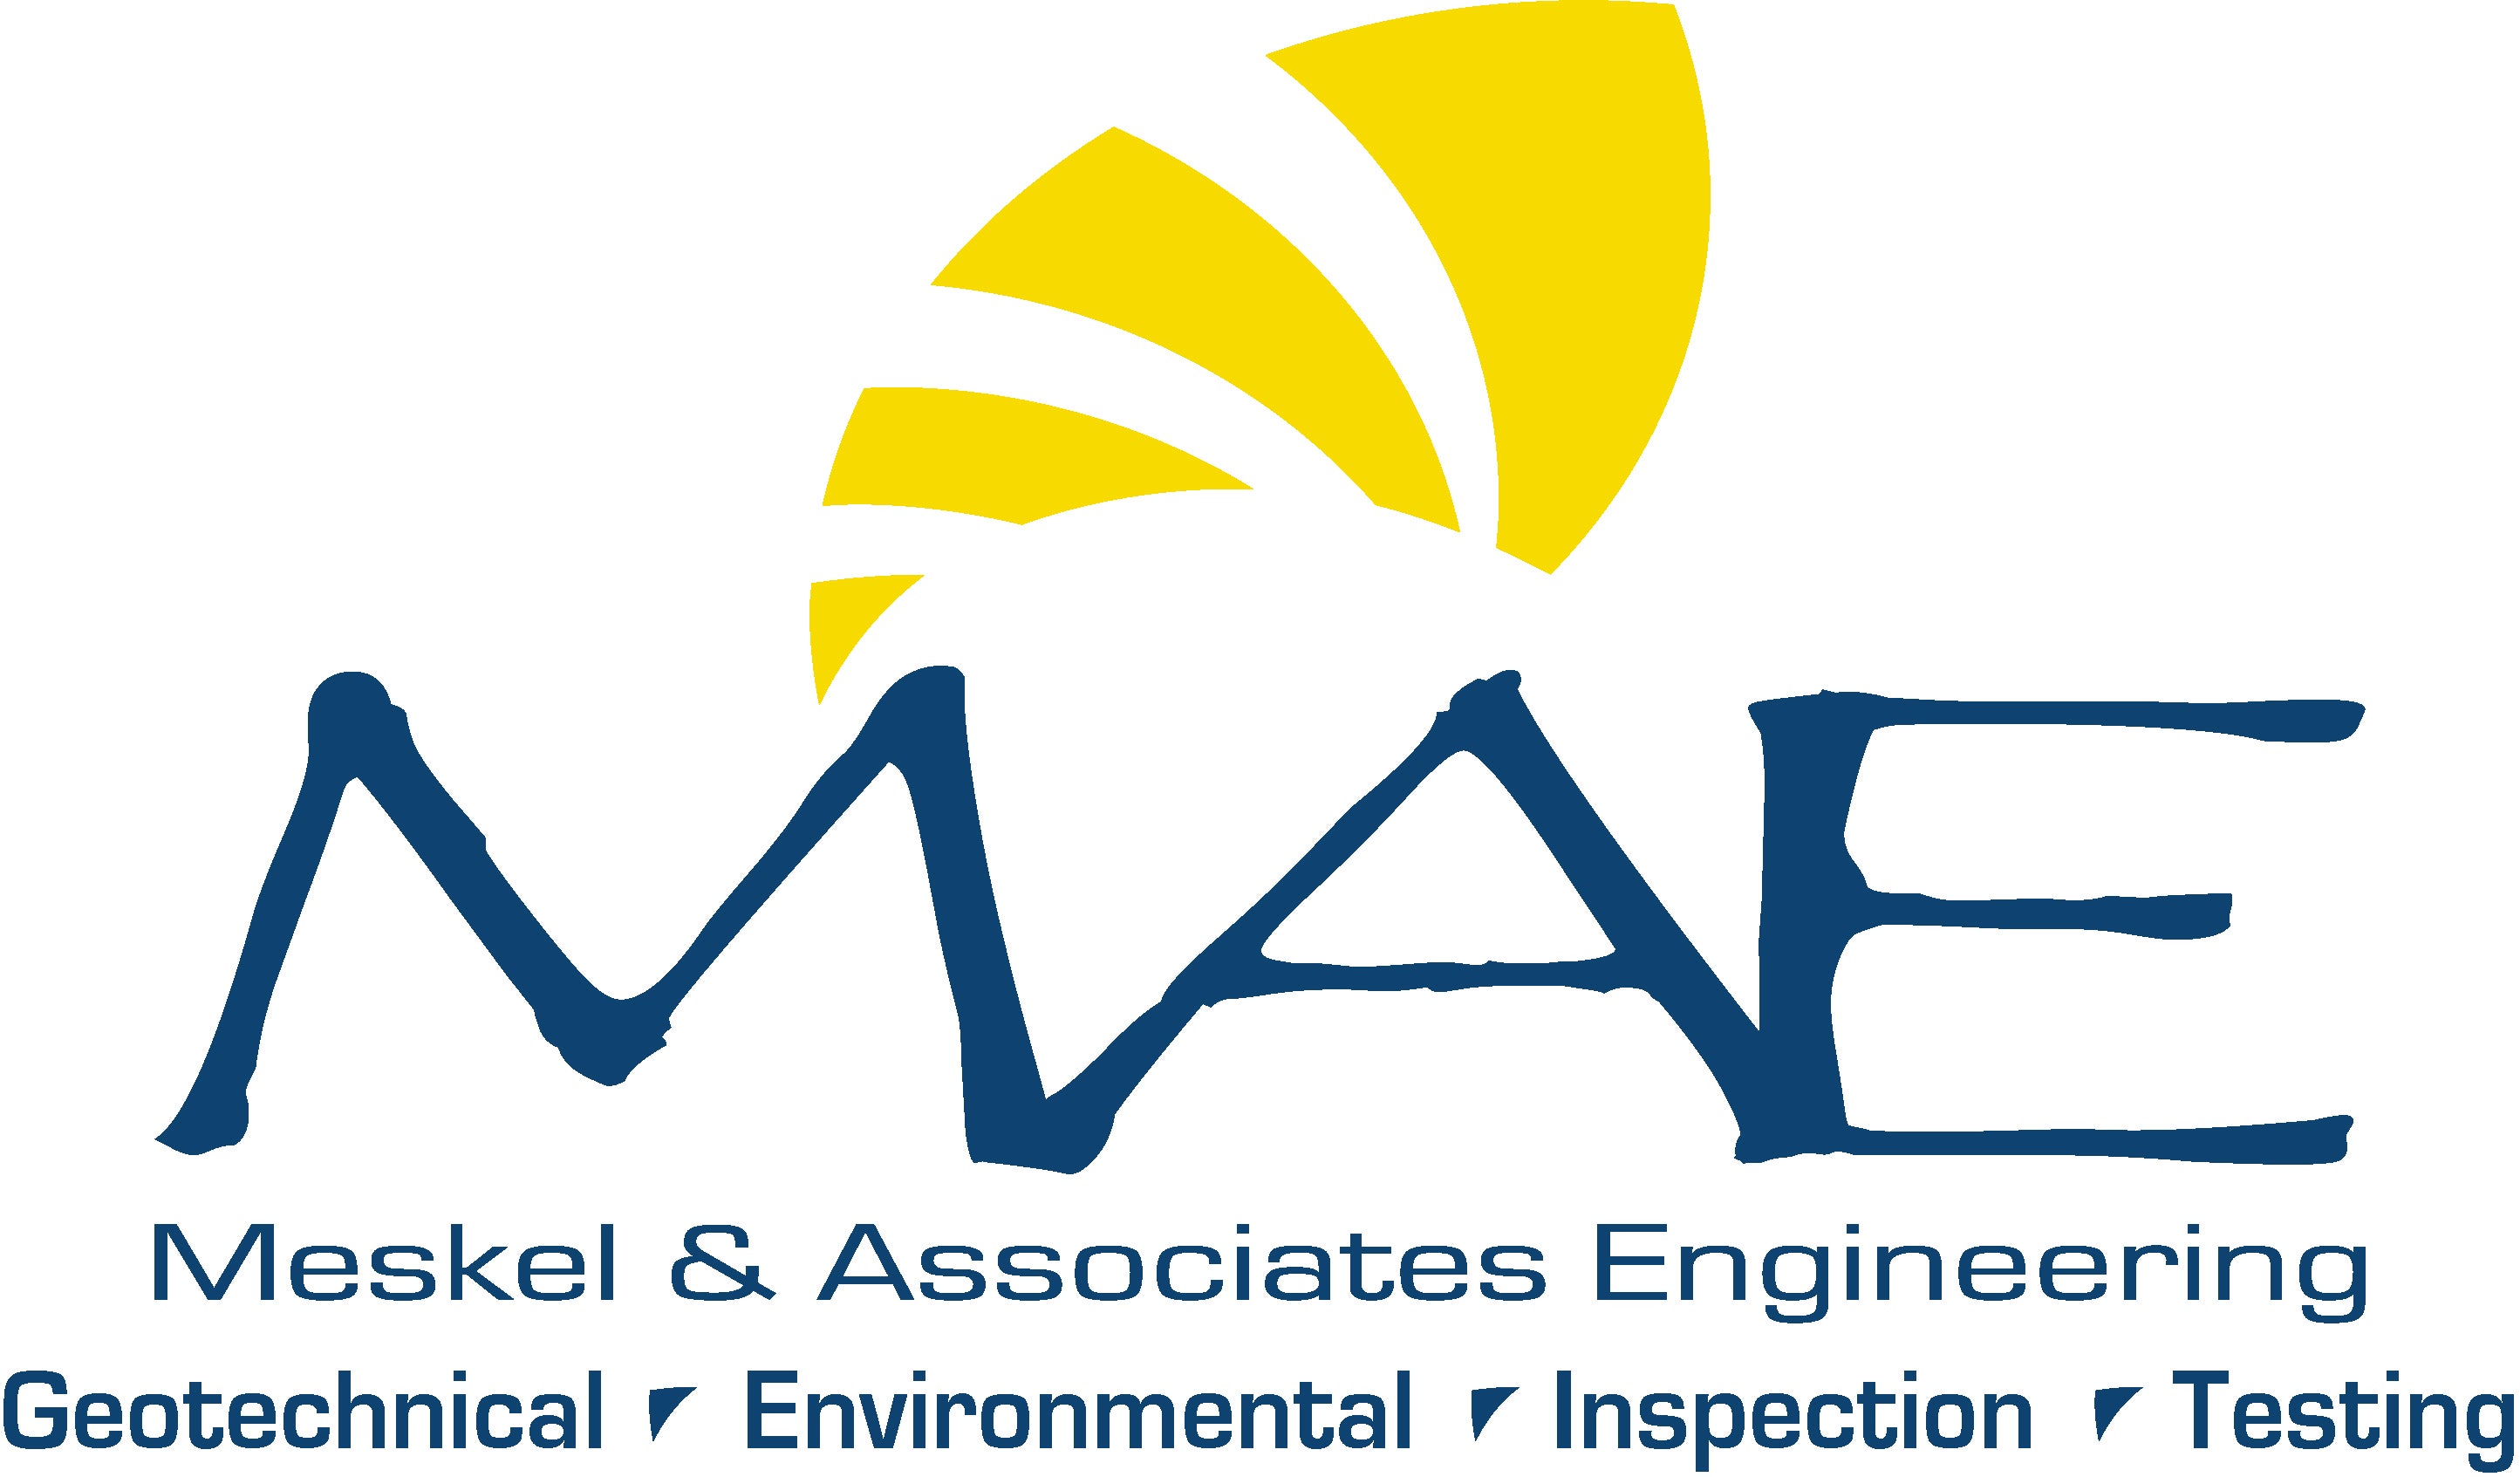 MAE Logo Sponsorship.jpg